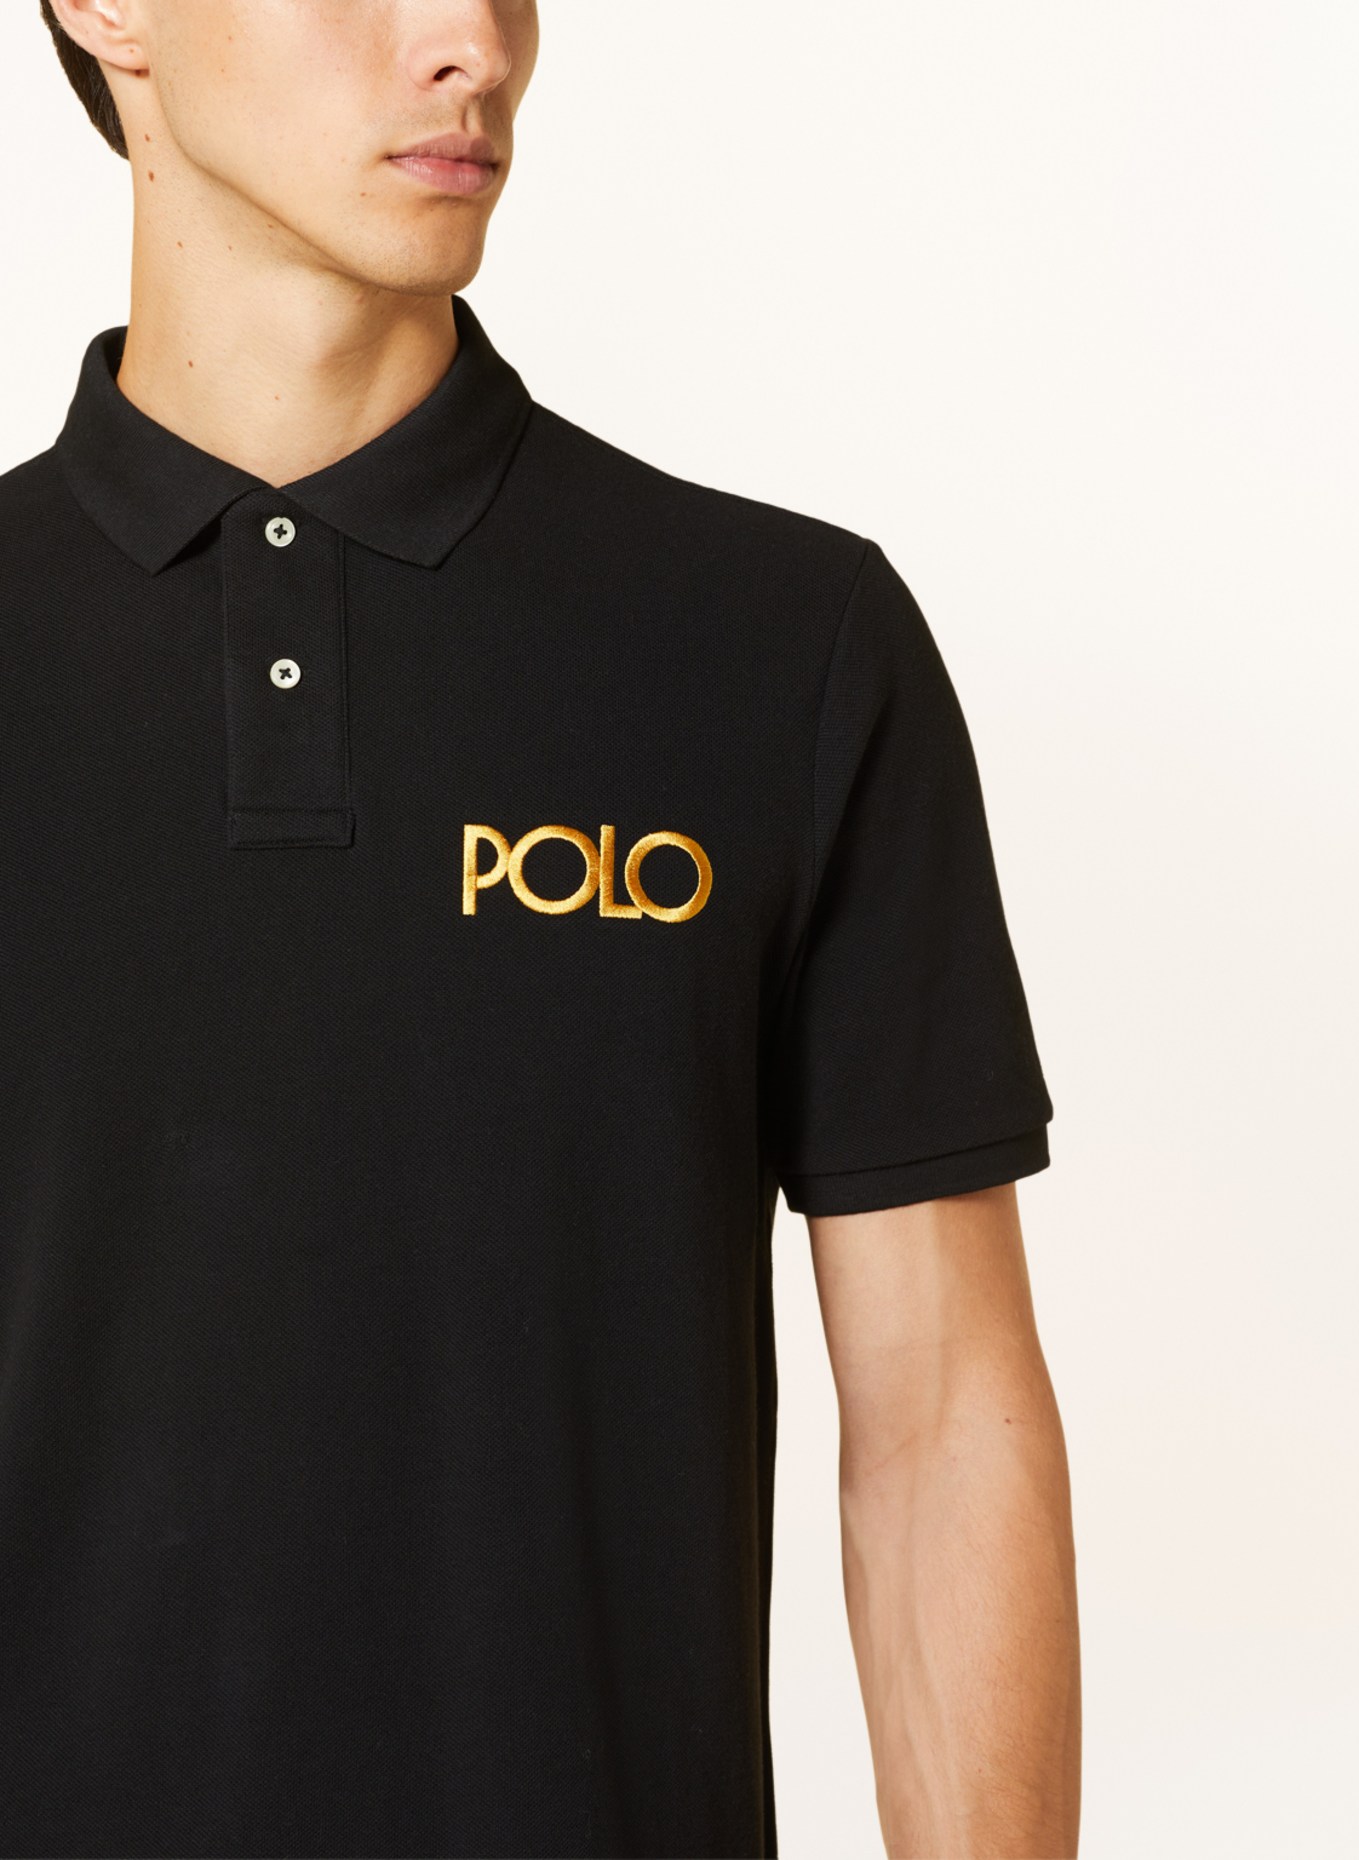 POLO RALPH LAUREN Piqué polo shirt classic fit, Color: DARK BLUE (Image 4)